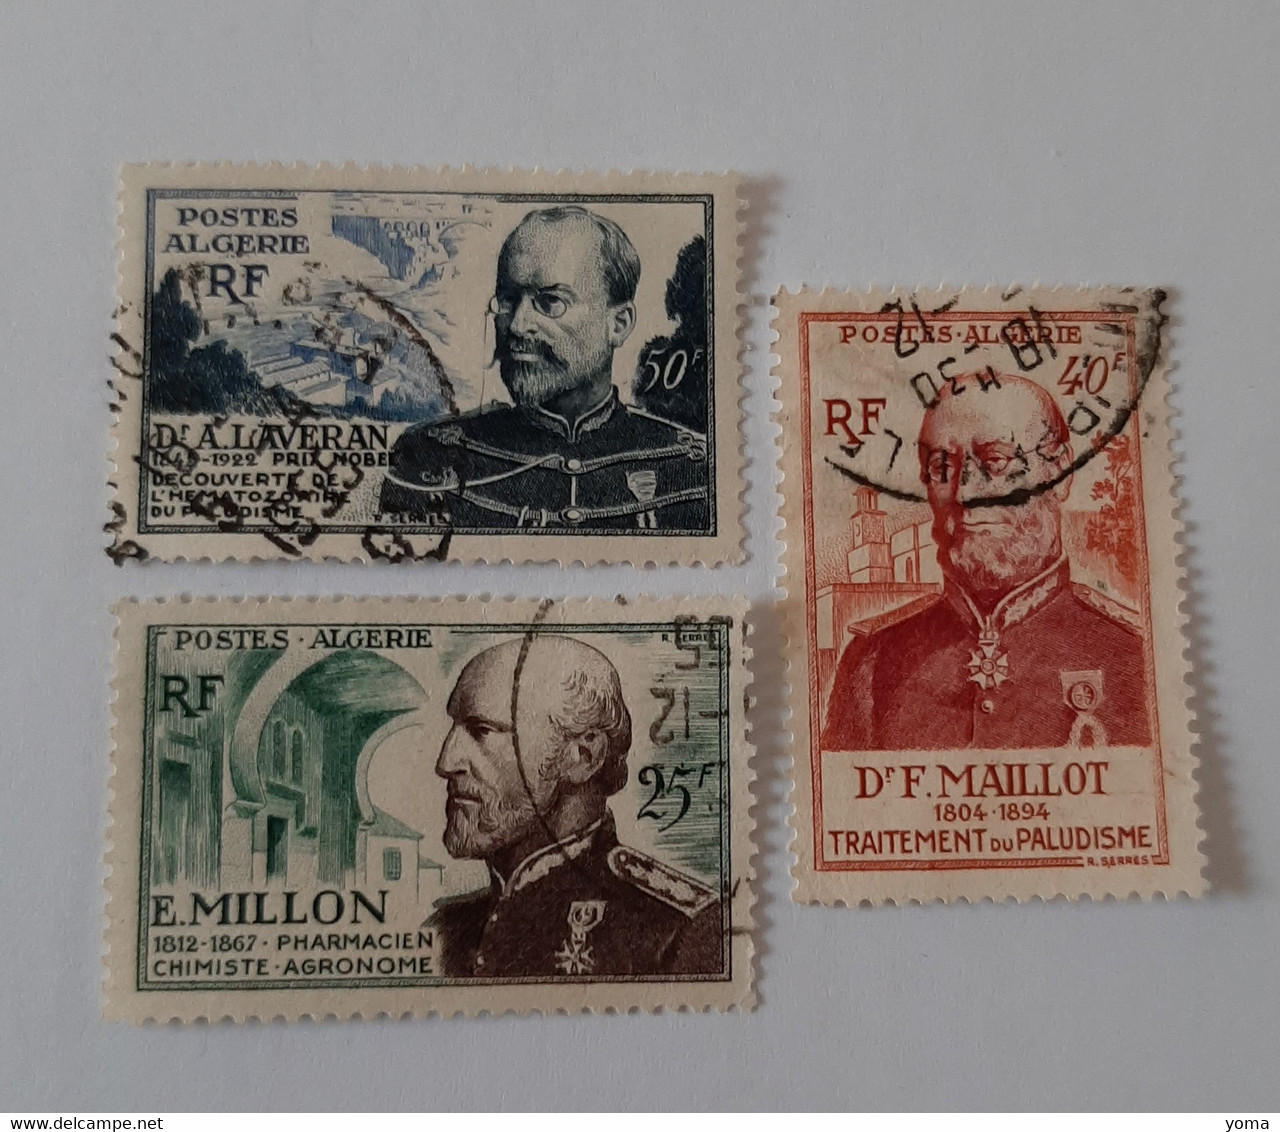 N° 304 à 306       En L' Honneur Du Corps De Santé Militaire - Used Stamps